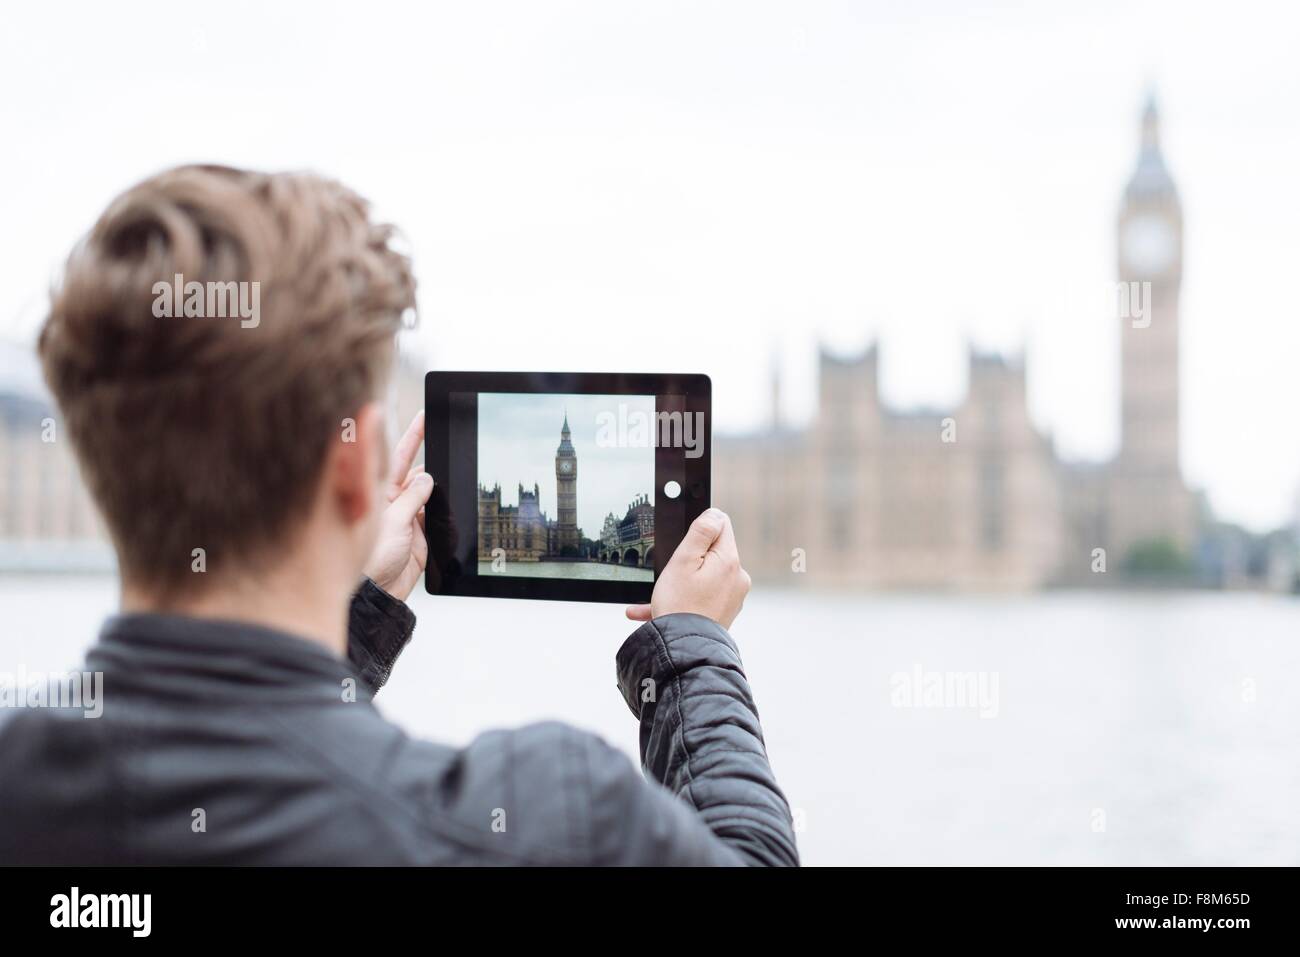 Vue arrière du jeune homme la photographie sur Big Ben, London, England, UK Banque D'Images